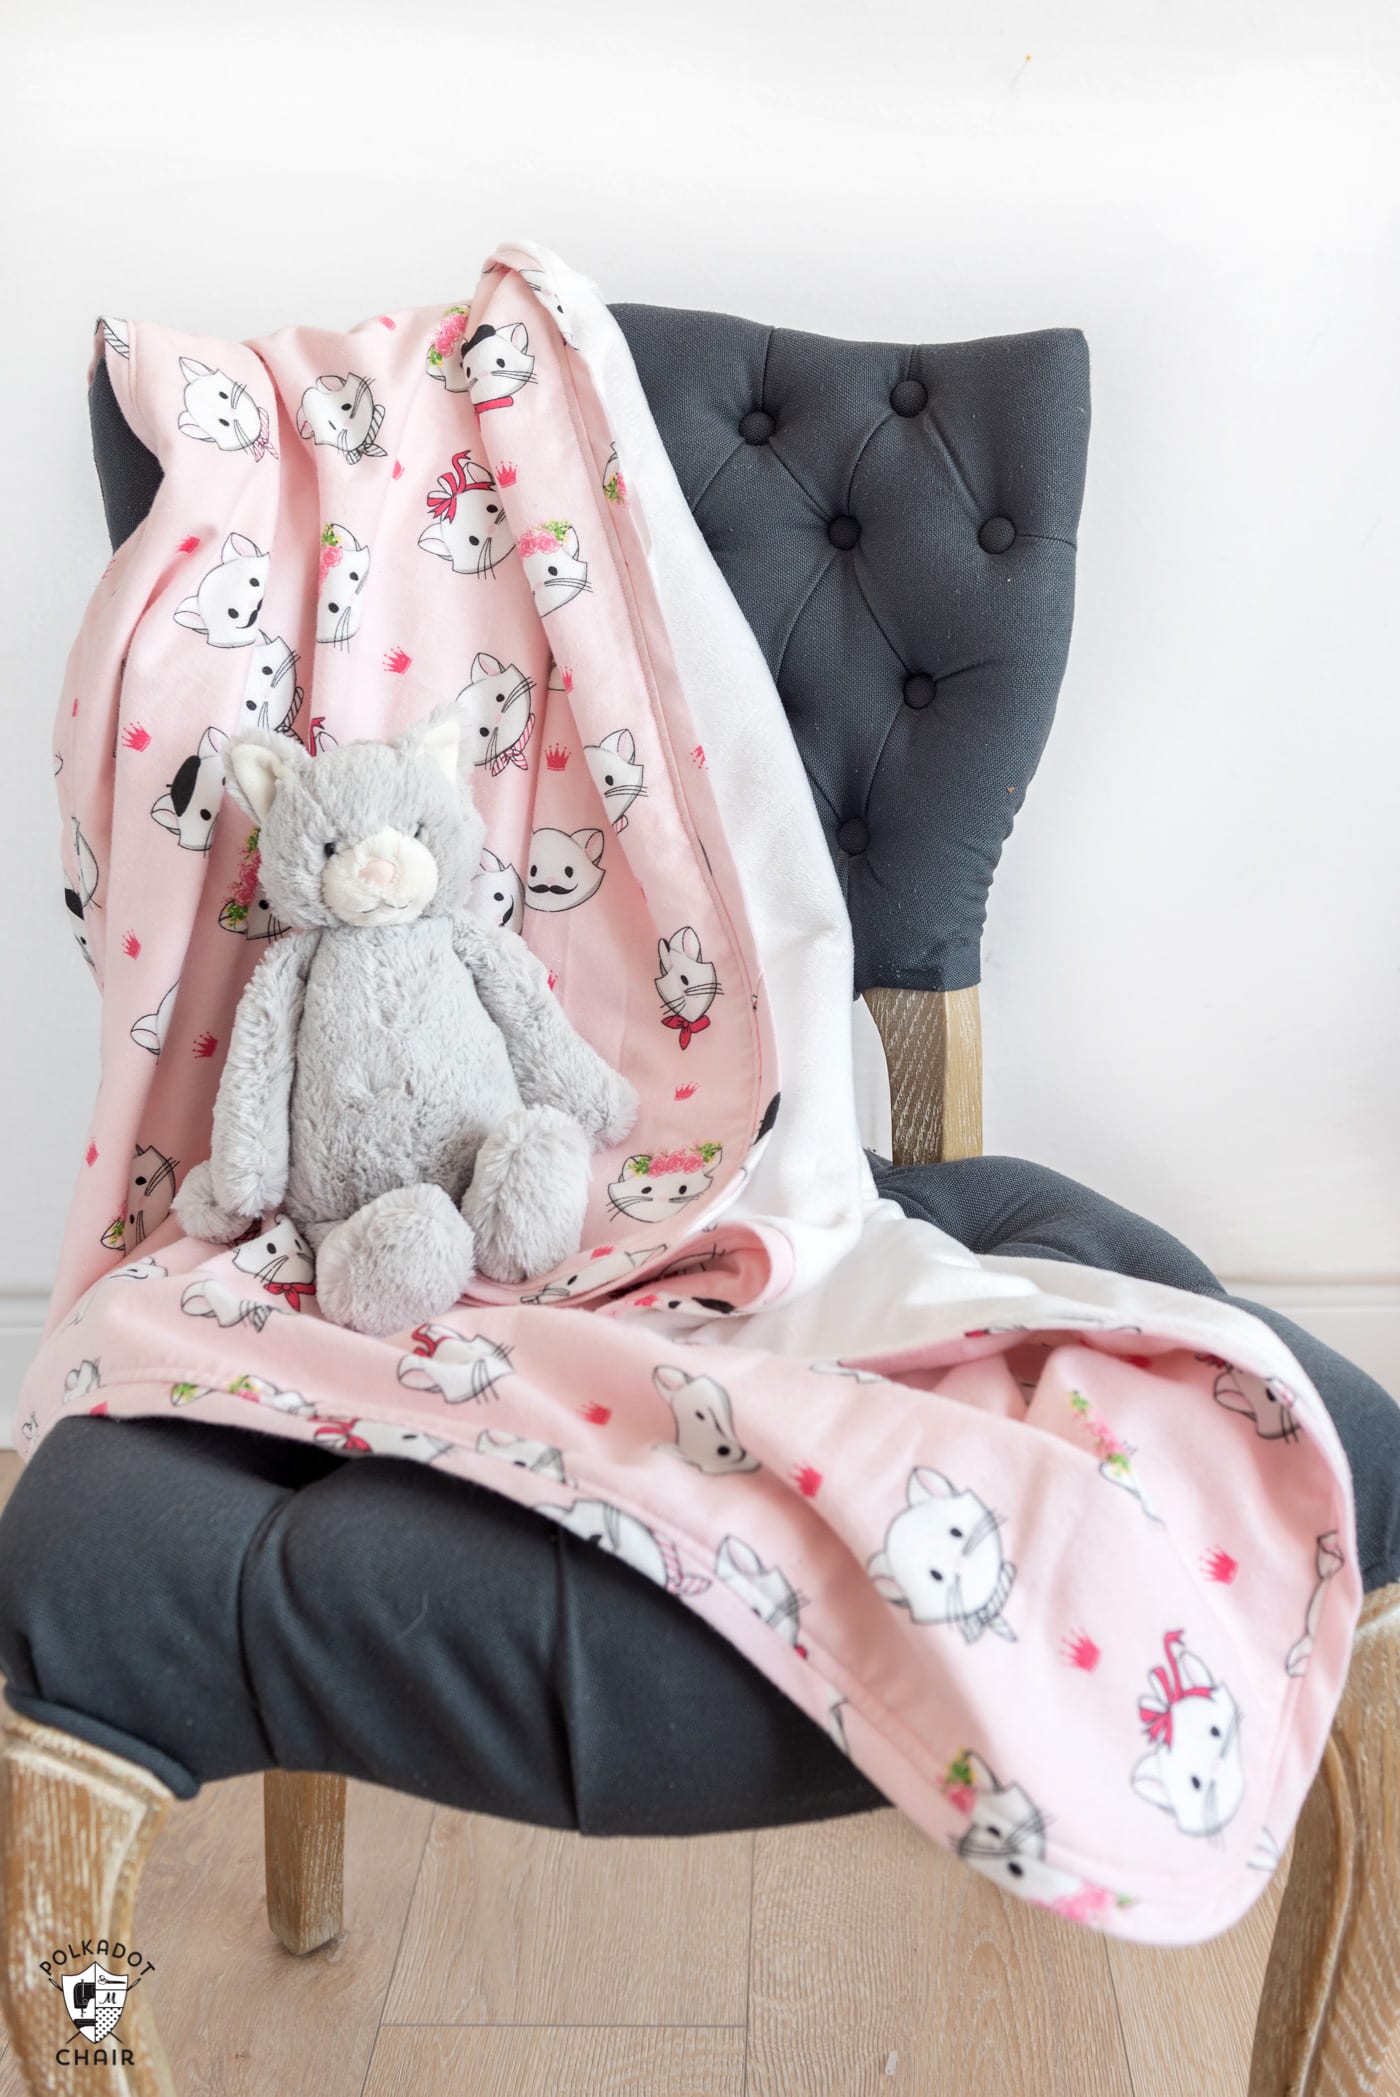 couverture de flanelle rose sur chaise grise avec chat jouet